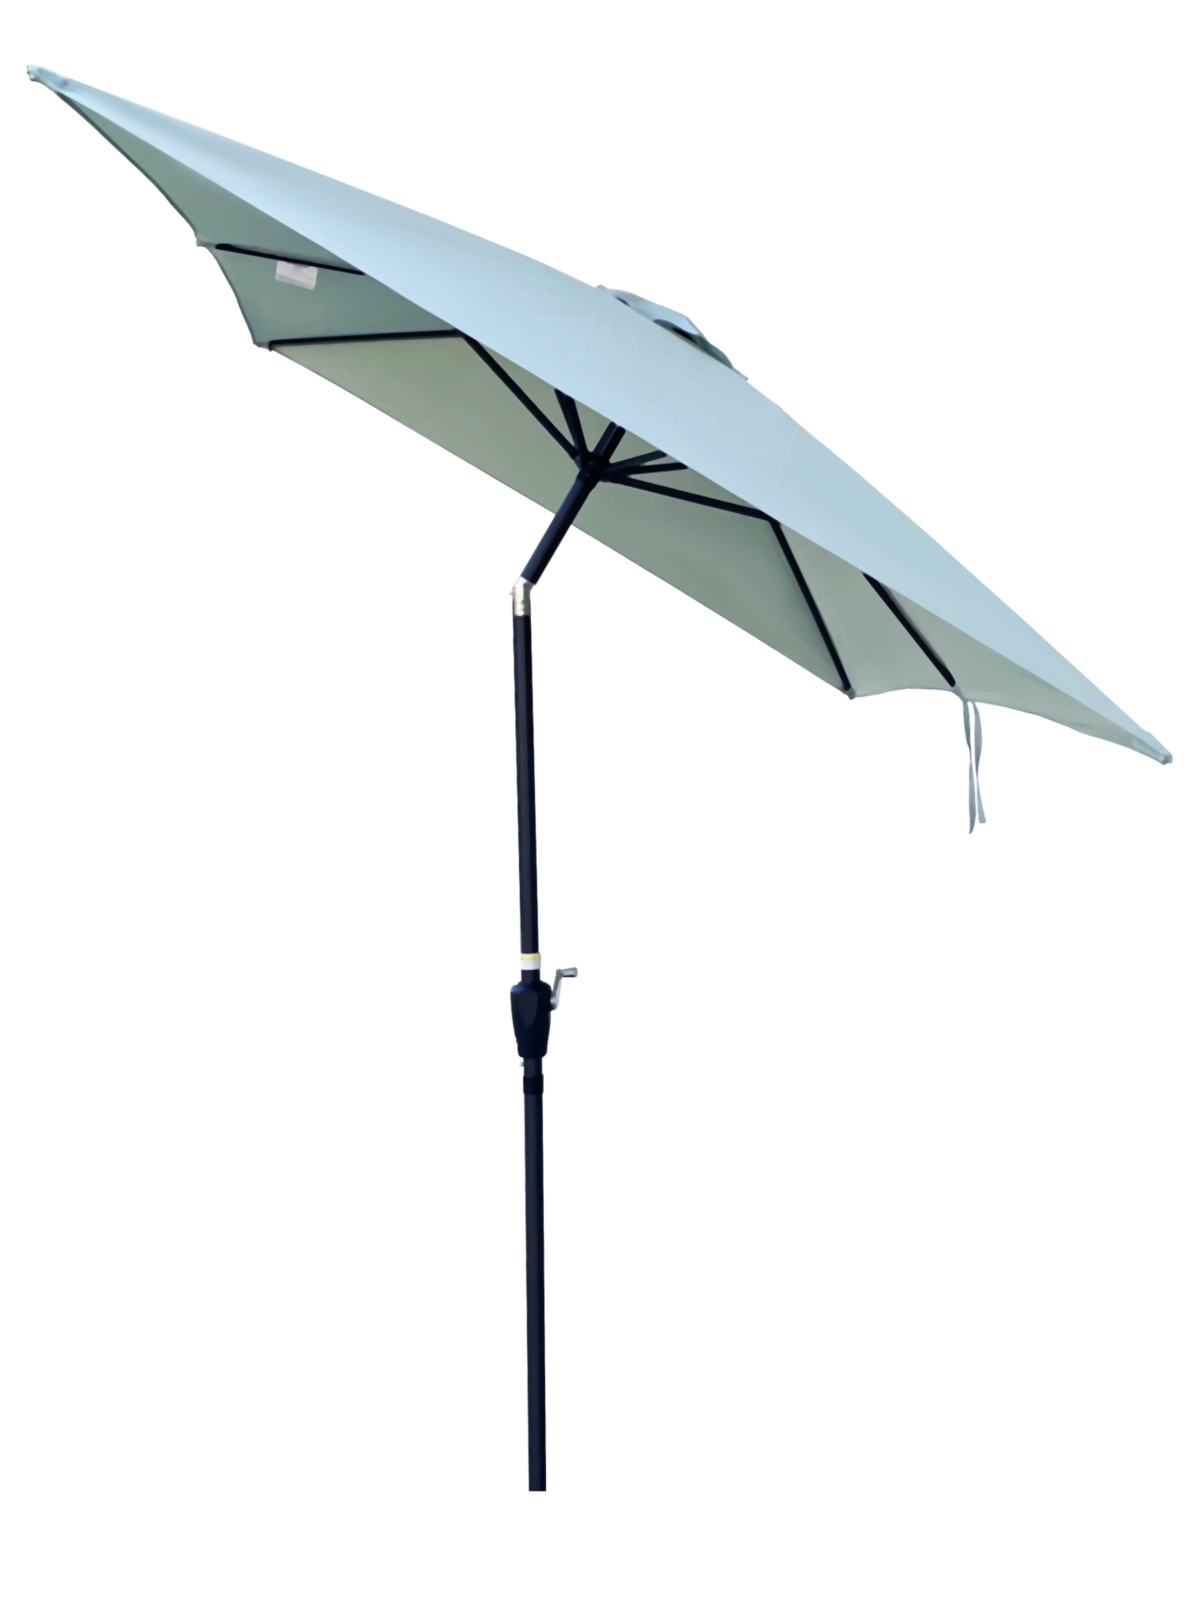 Waterproof Patio Umbrella with Tilt and Crank - Green